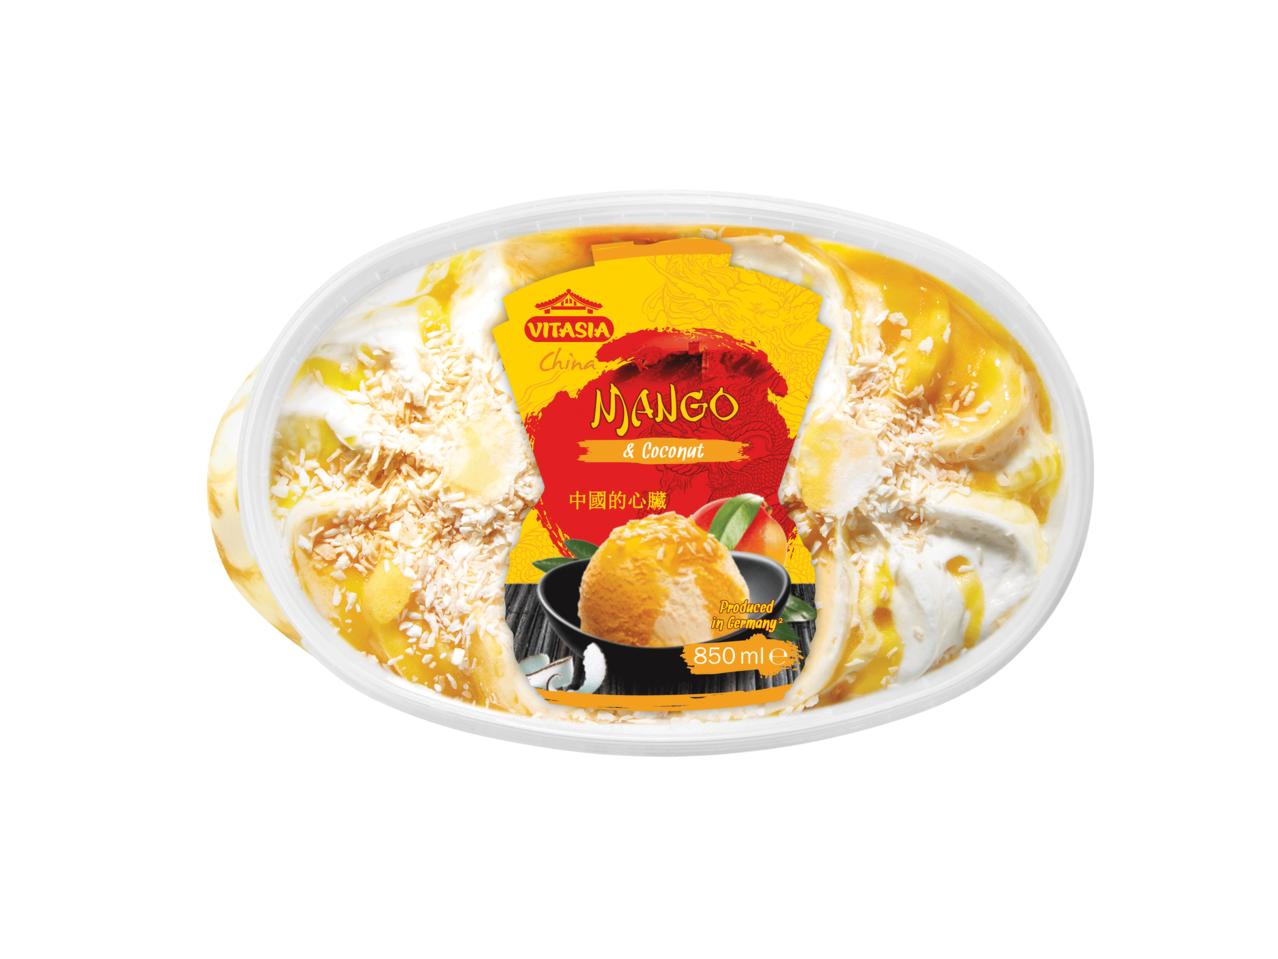 VITASIA Asian Flavoured Ice Cream